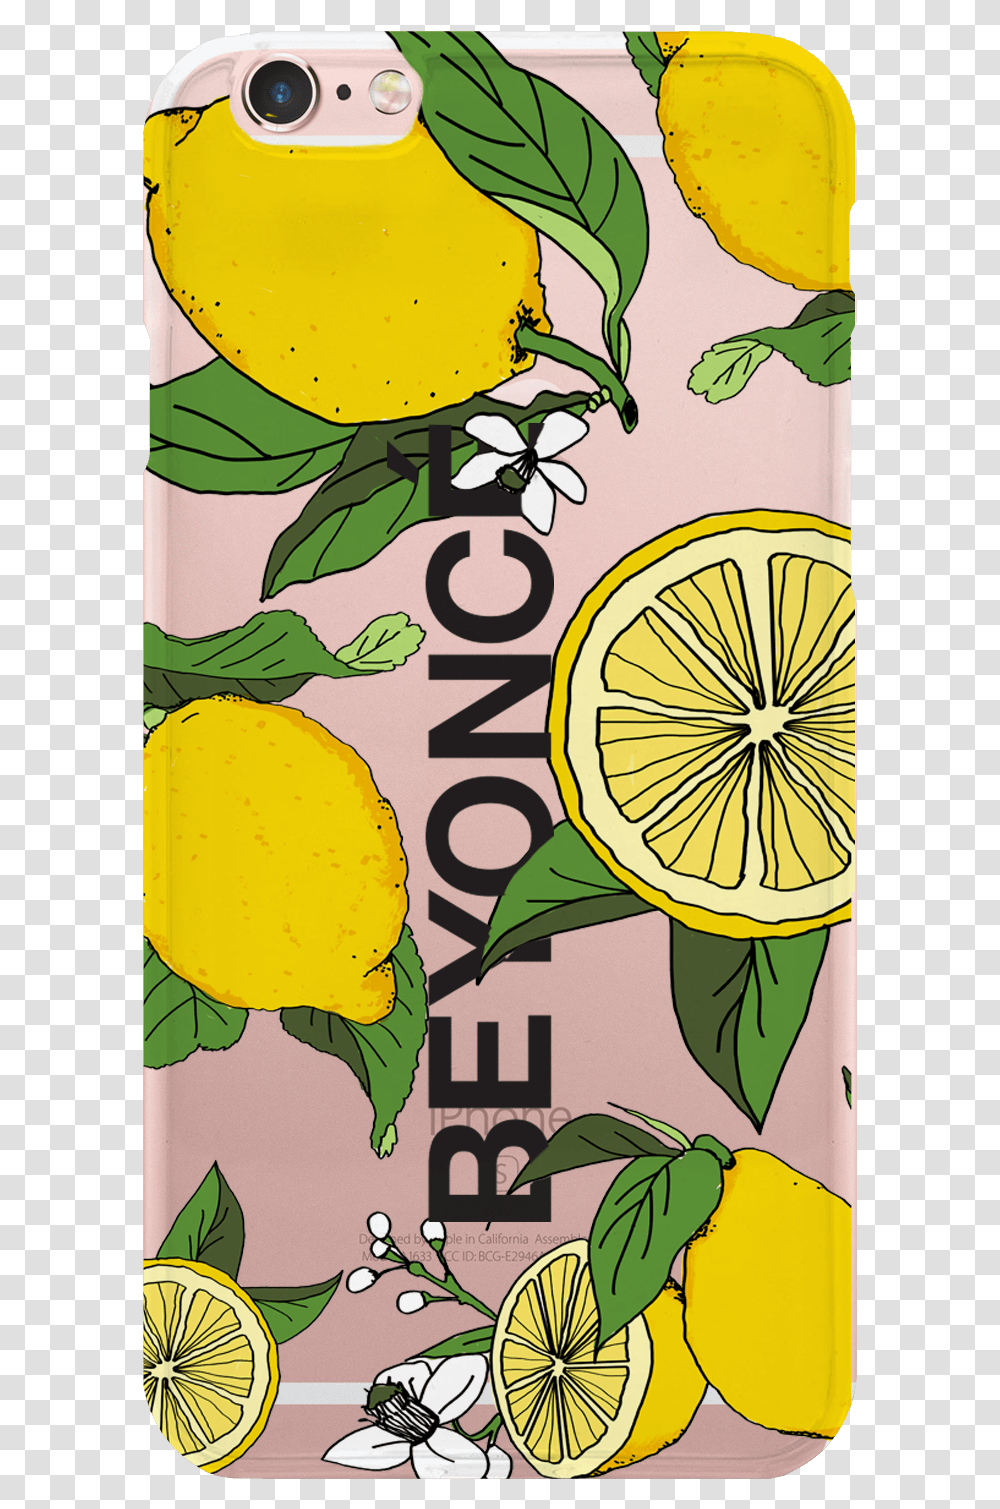 Beyonce Lemonade Merch, Plant, Citrus Fruit, Food Transparent Png